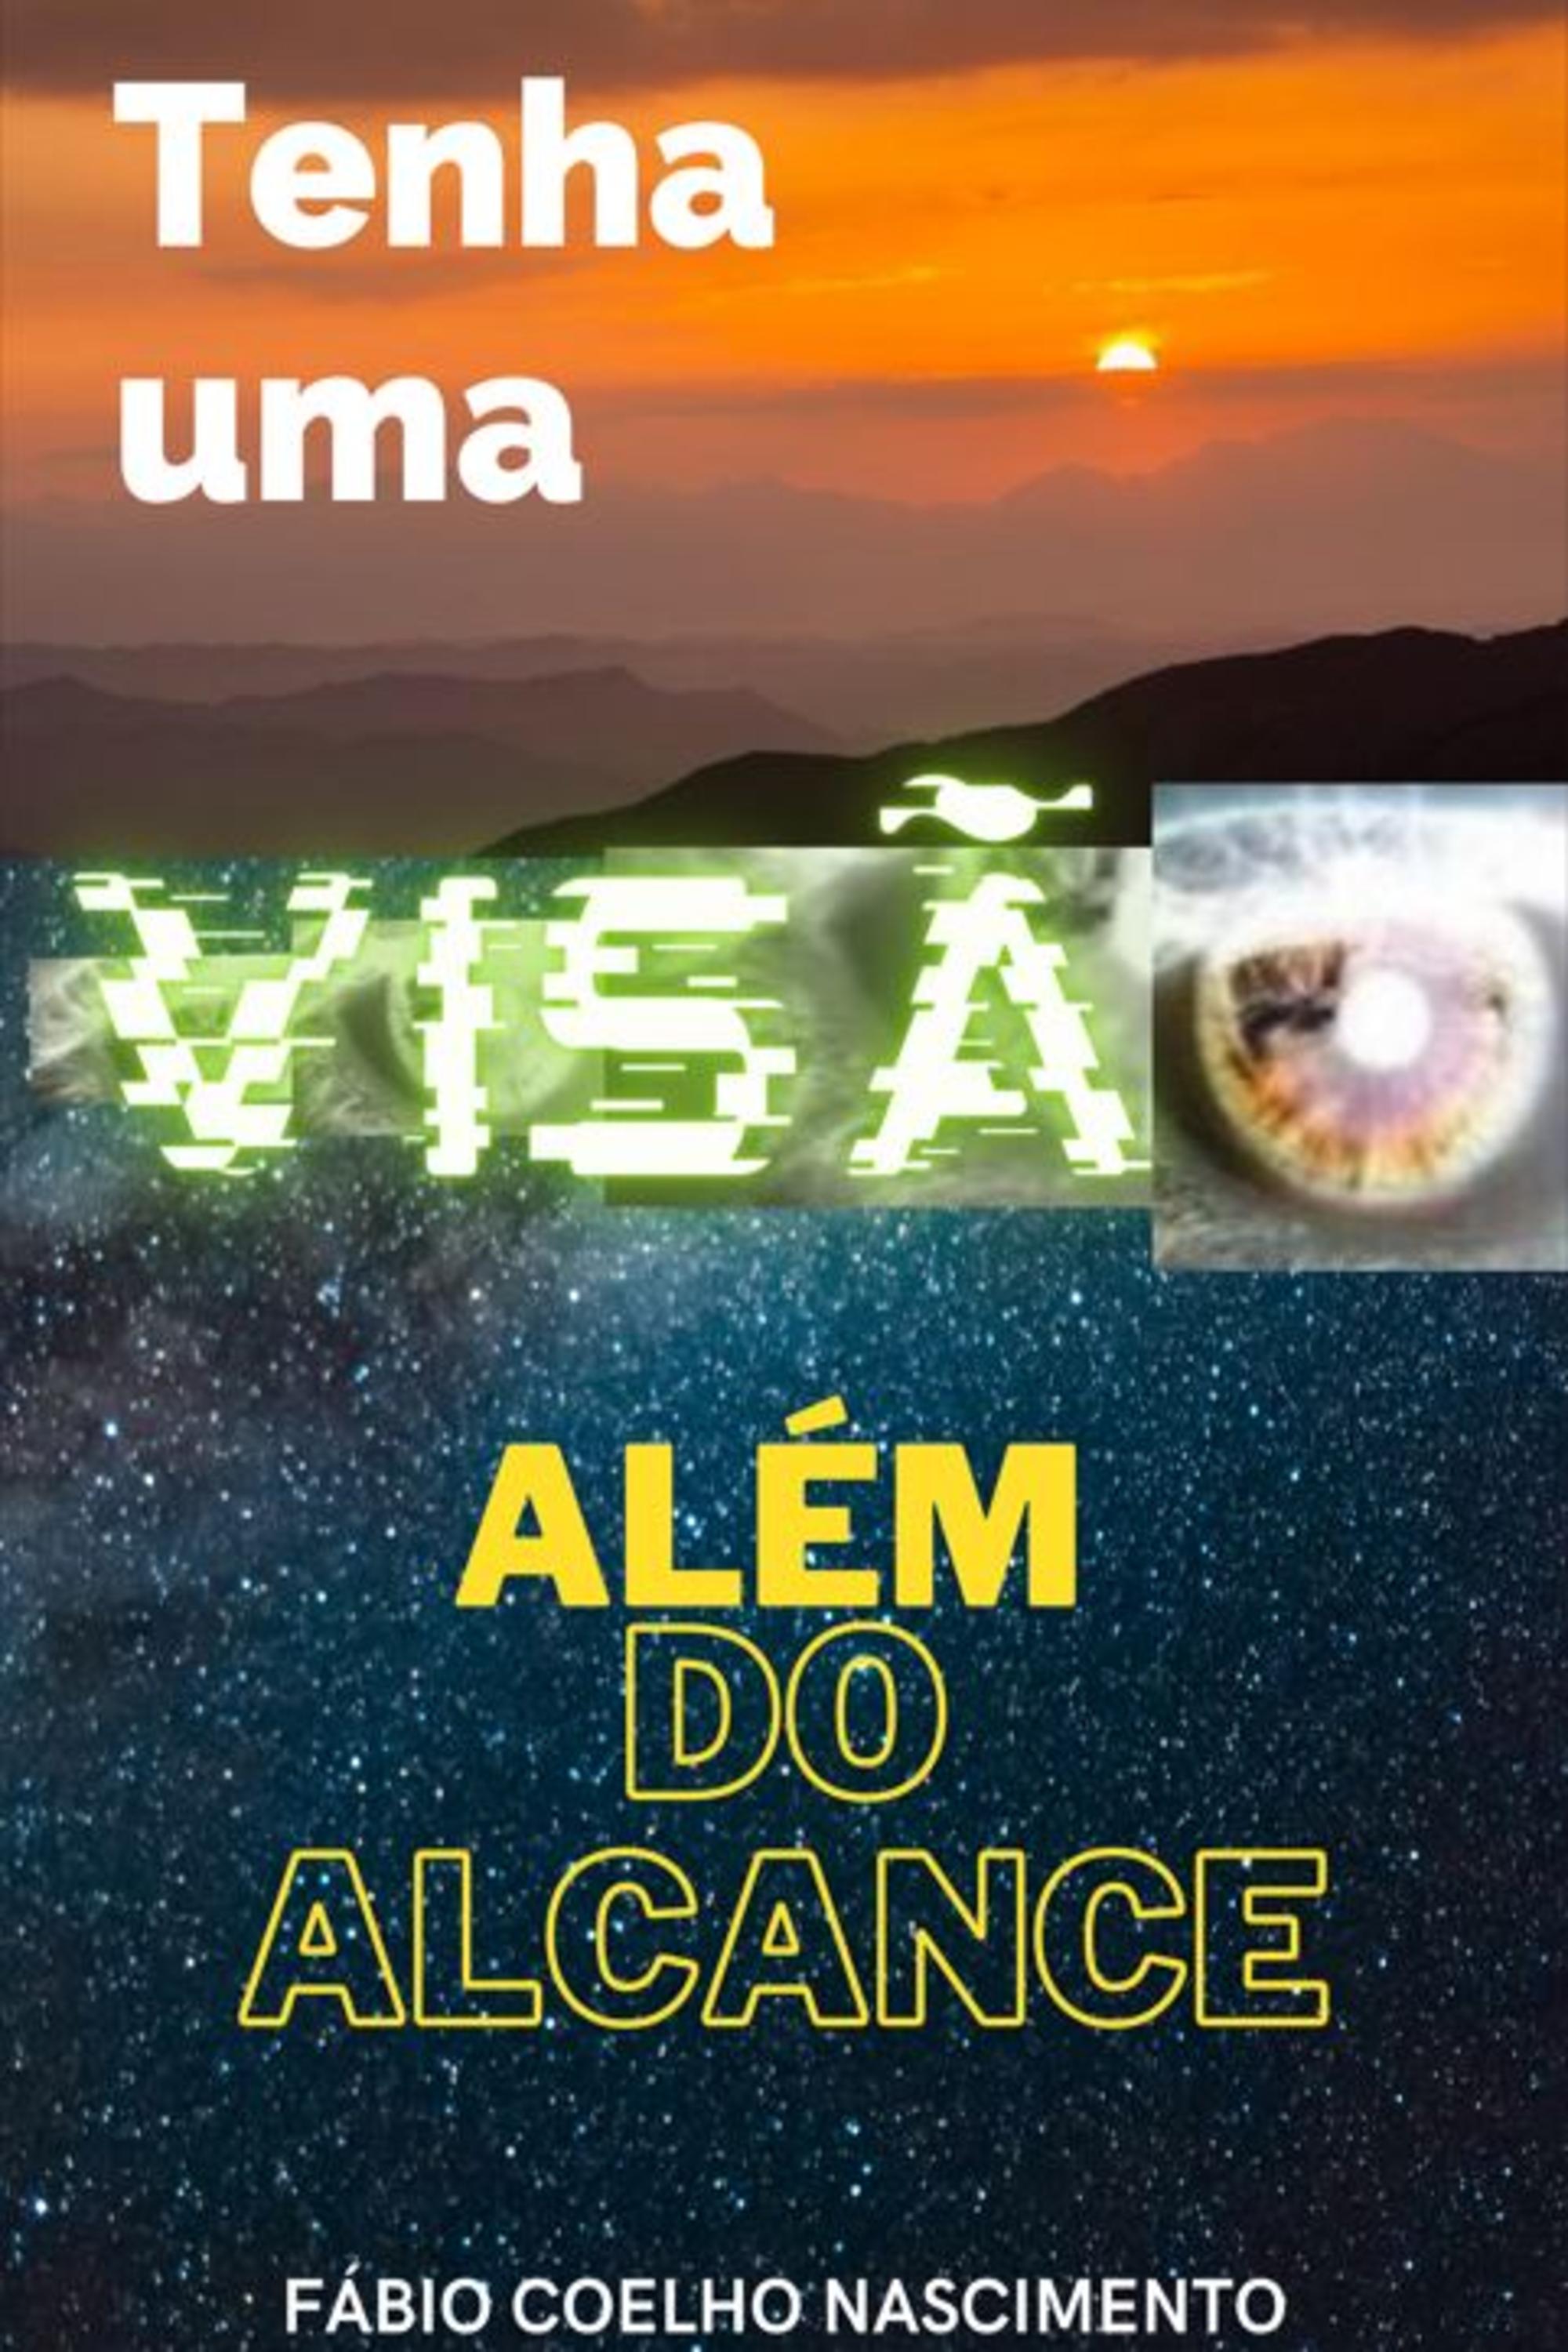 TENHA UMA VISÃO ALÉM DO ALCANCE